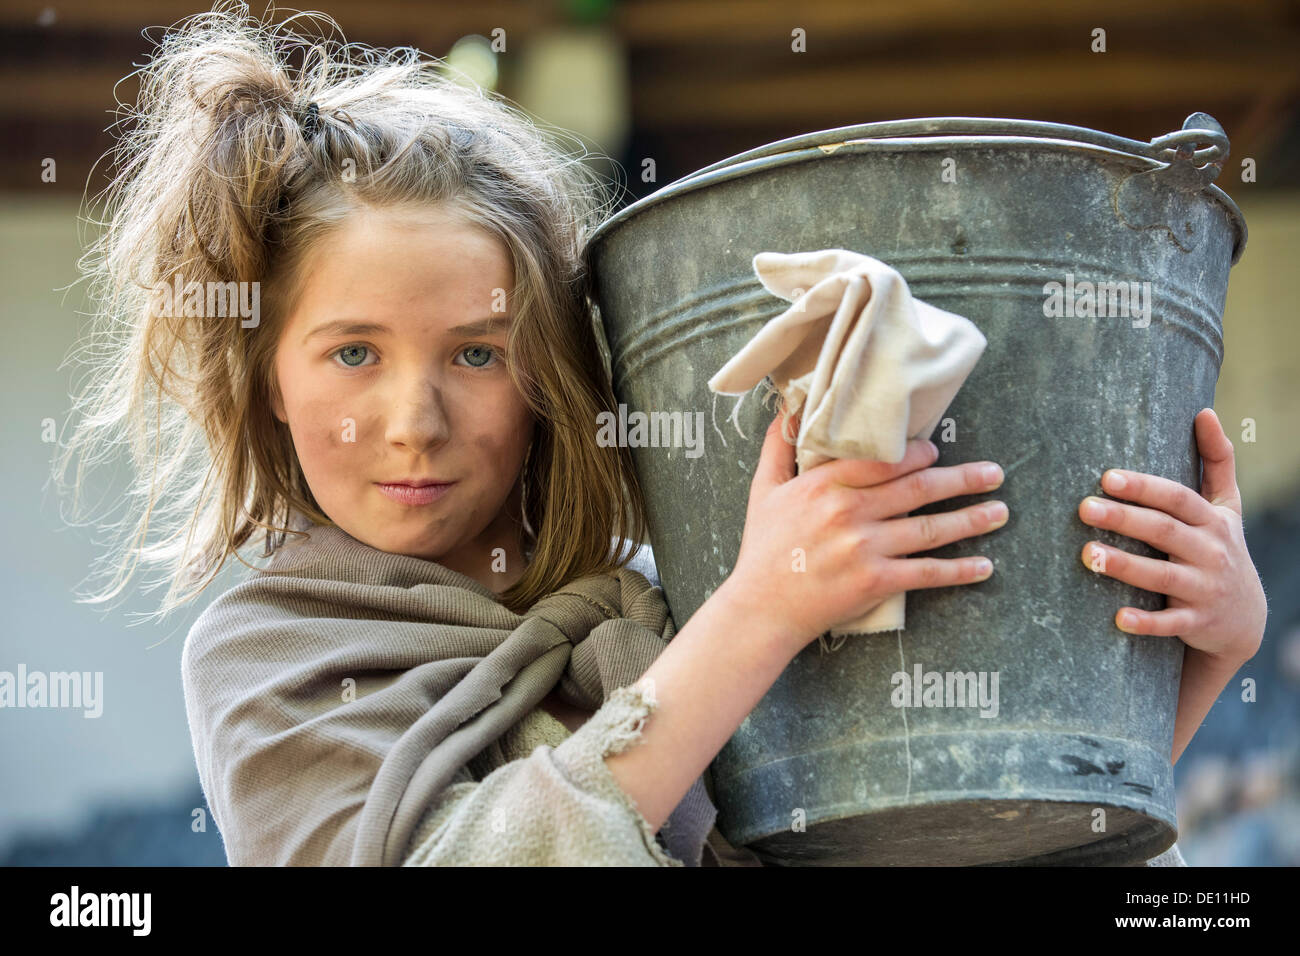 La muchacha pobre Cosette, Les Misérables - versión para teatro de la novela de Victor Hugo, del Waldbuehne Heessen teatro al aire libre Foto de stock